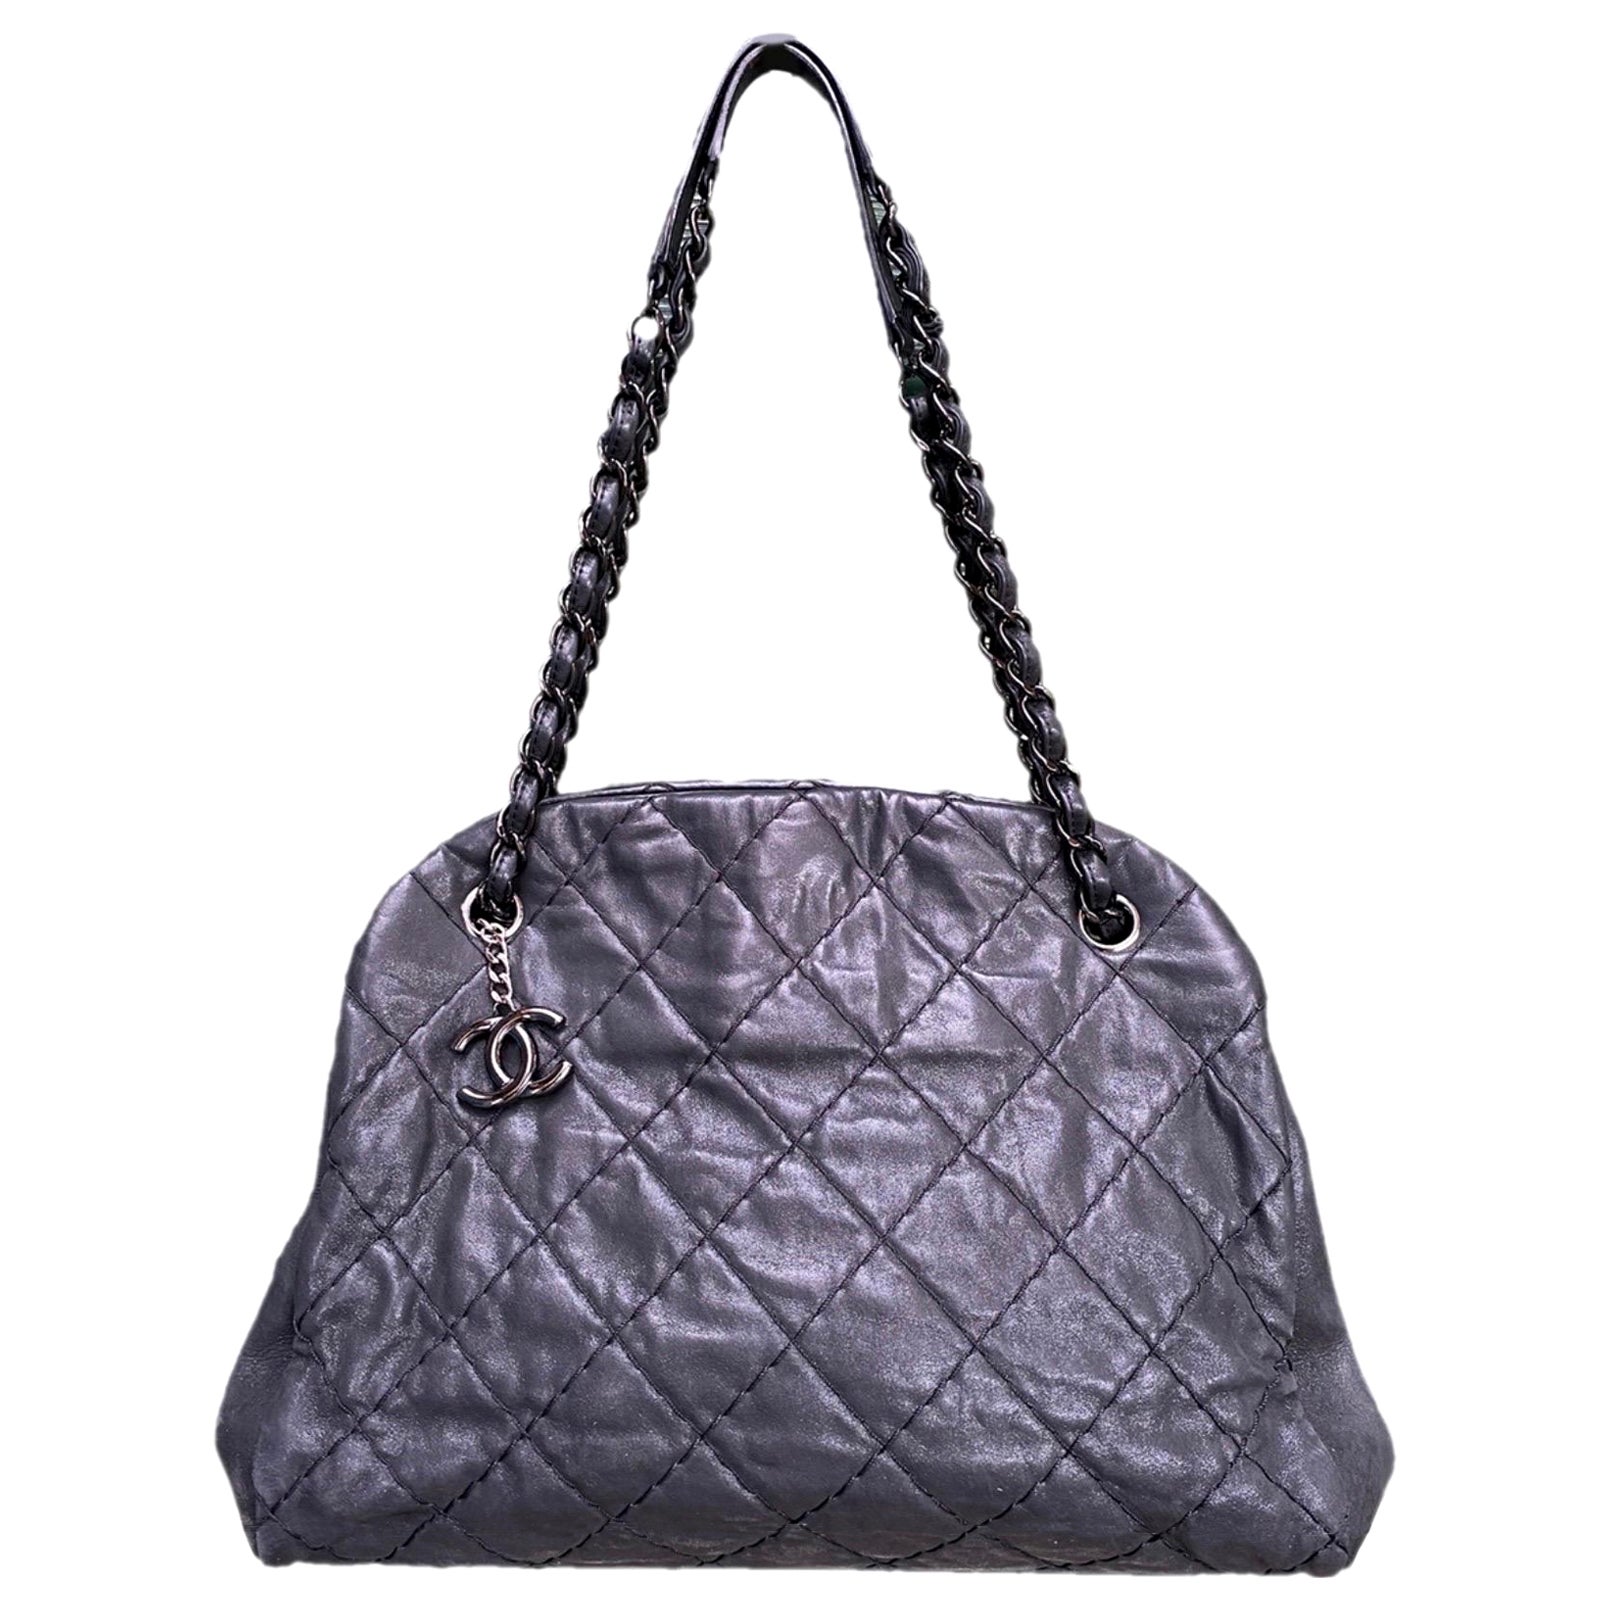 Chanel Black Leather Shoulder Bag - 1,248 For Sale on 1stDibs